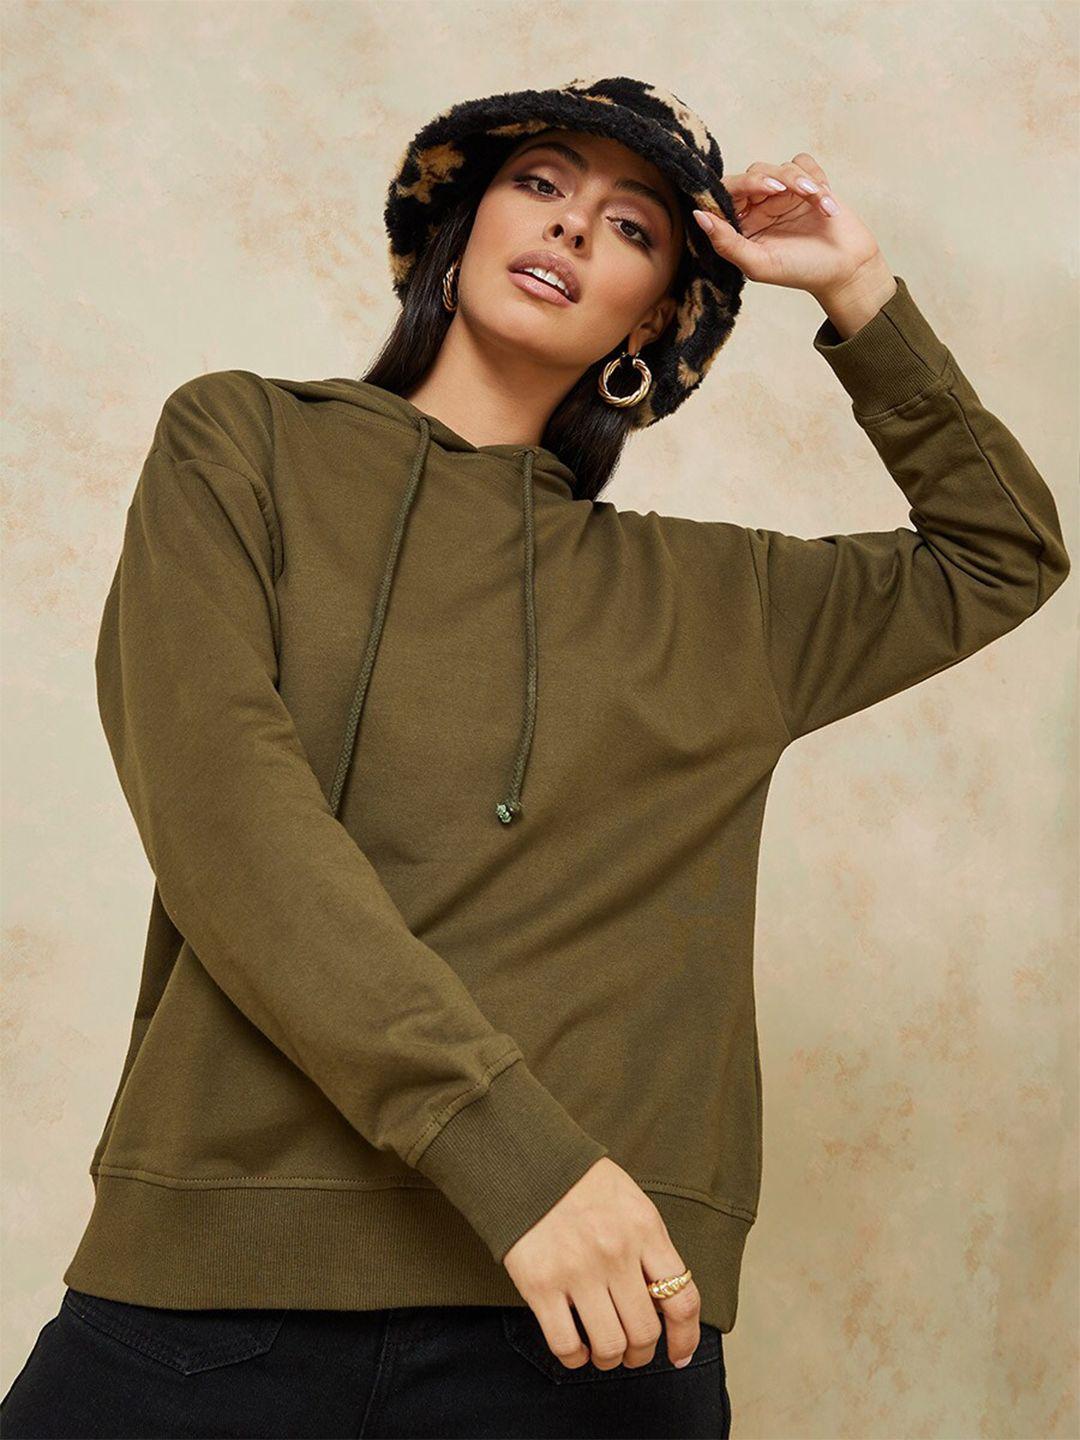 styli-women-olive-green-cotton-hooded-sweatshirt